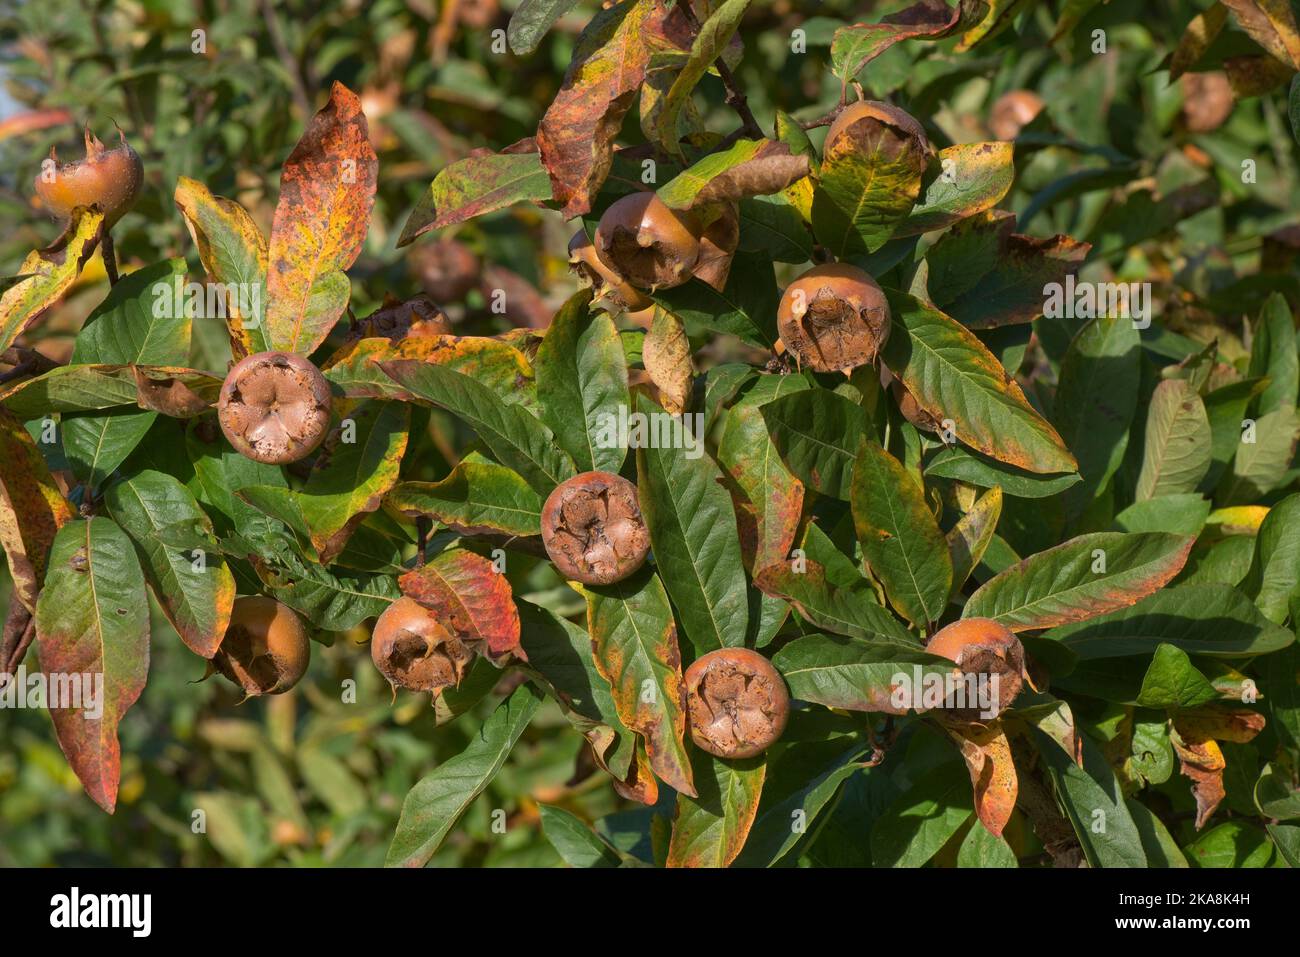 Médlar mature (Mespilus germanica) fruit complet, qui est émouté avant d'utiliser, sur l'arbre avec des feuilles en couleur d'automne, Berkshire, octobre Banque D'Images